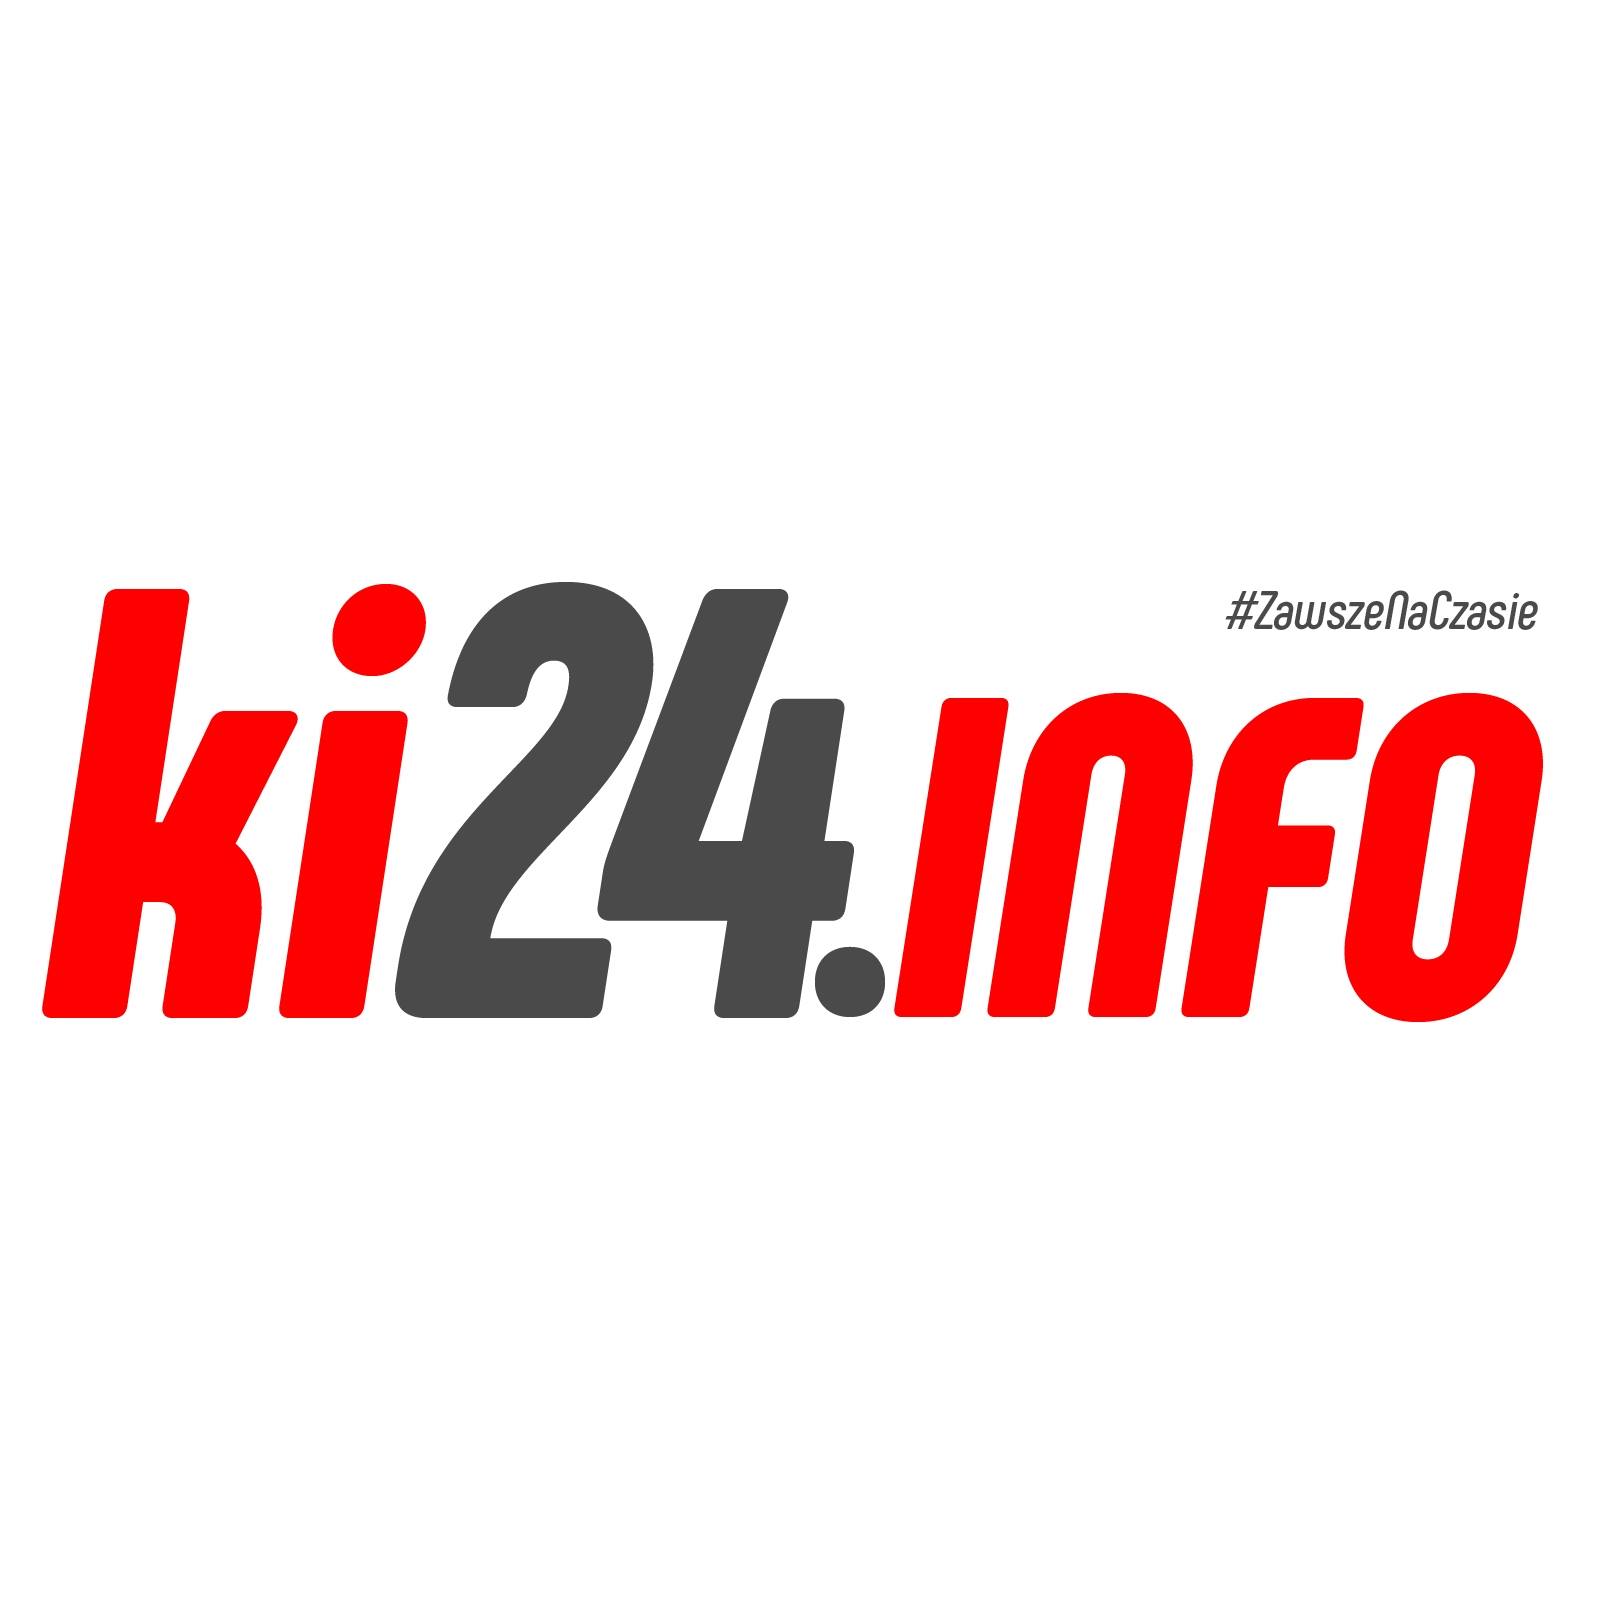 ki24.info na Facebooku